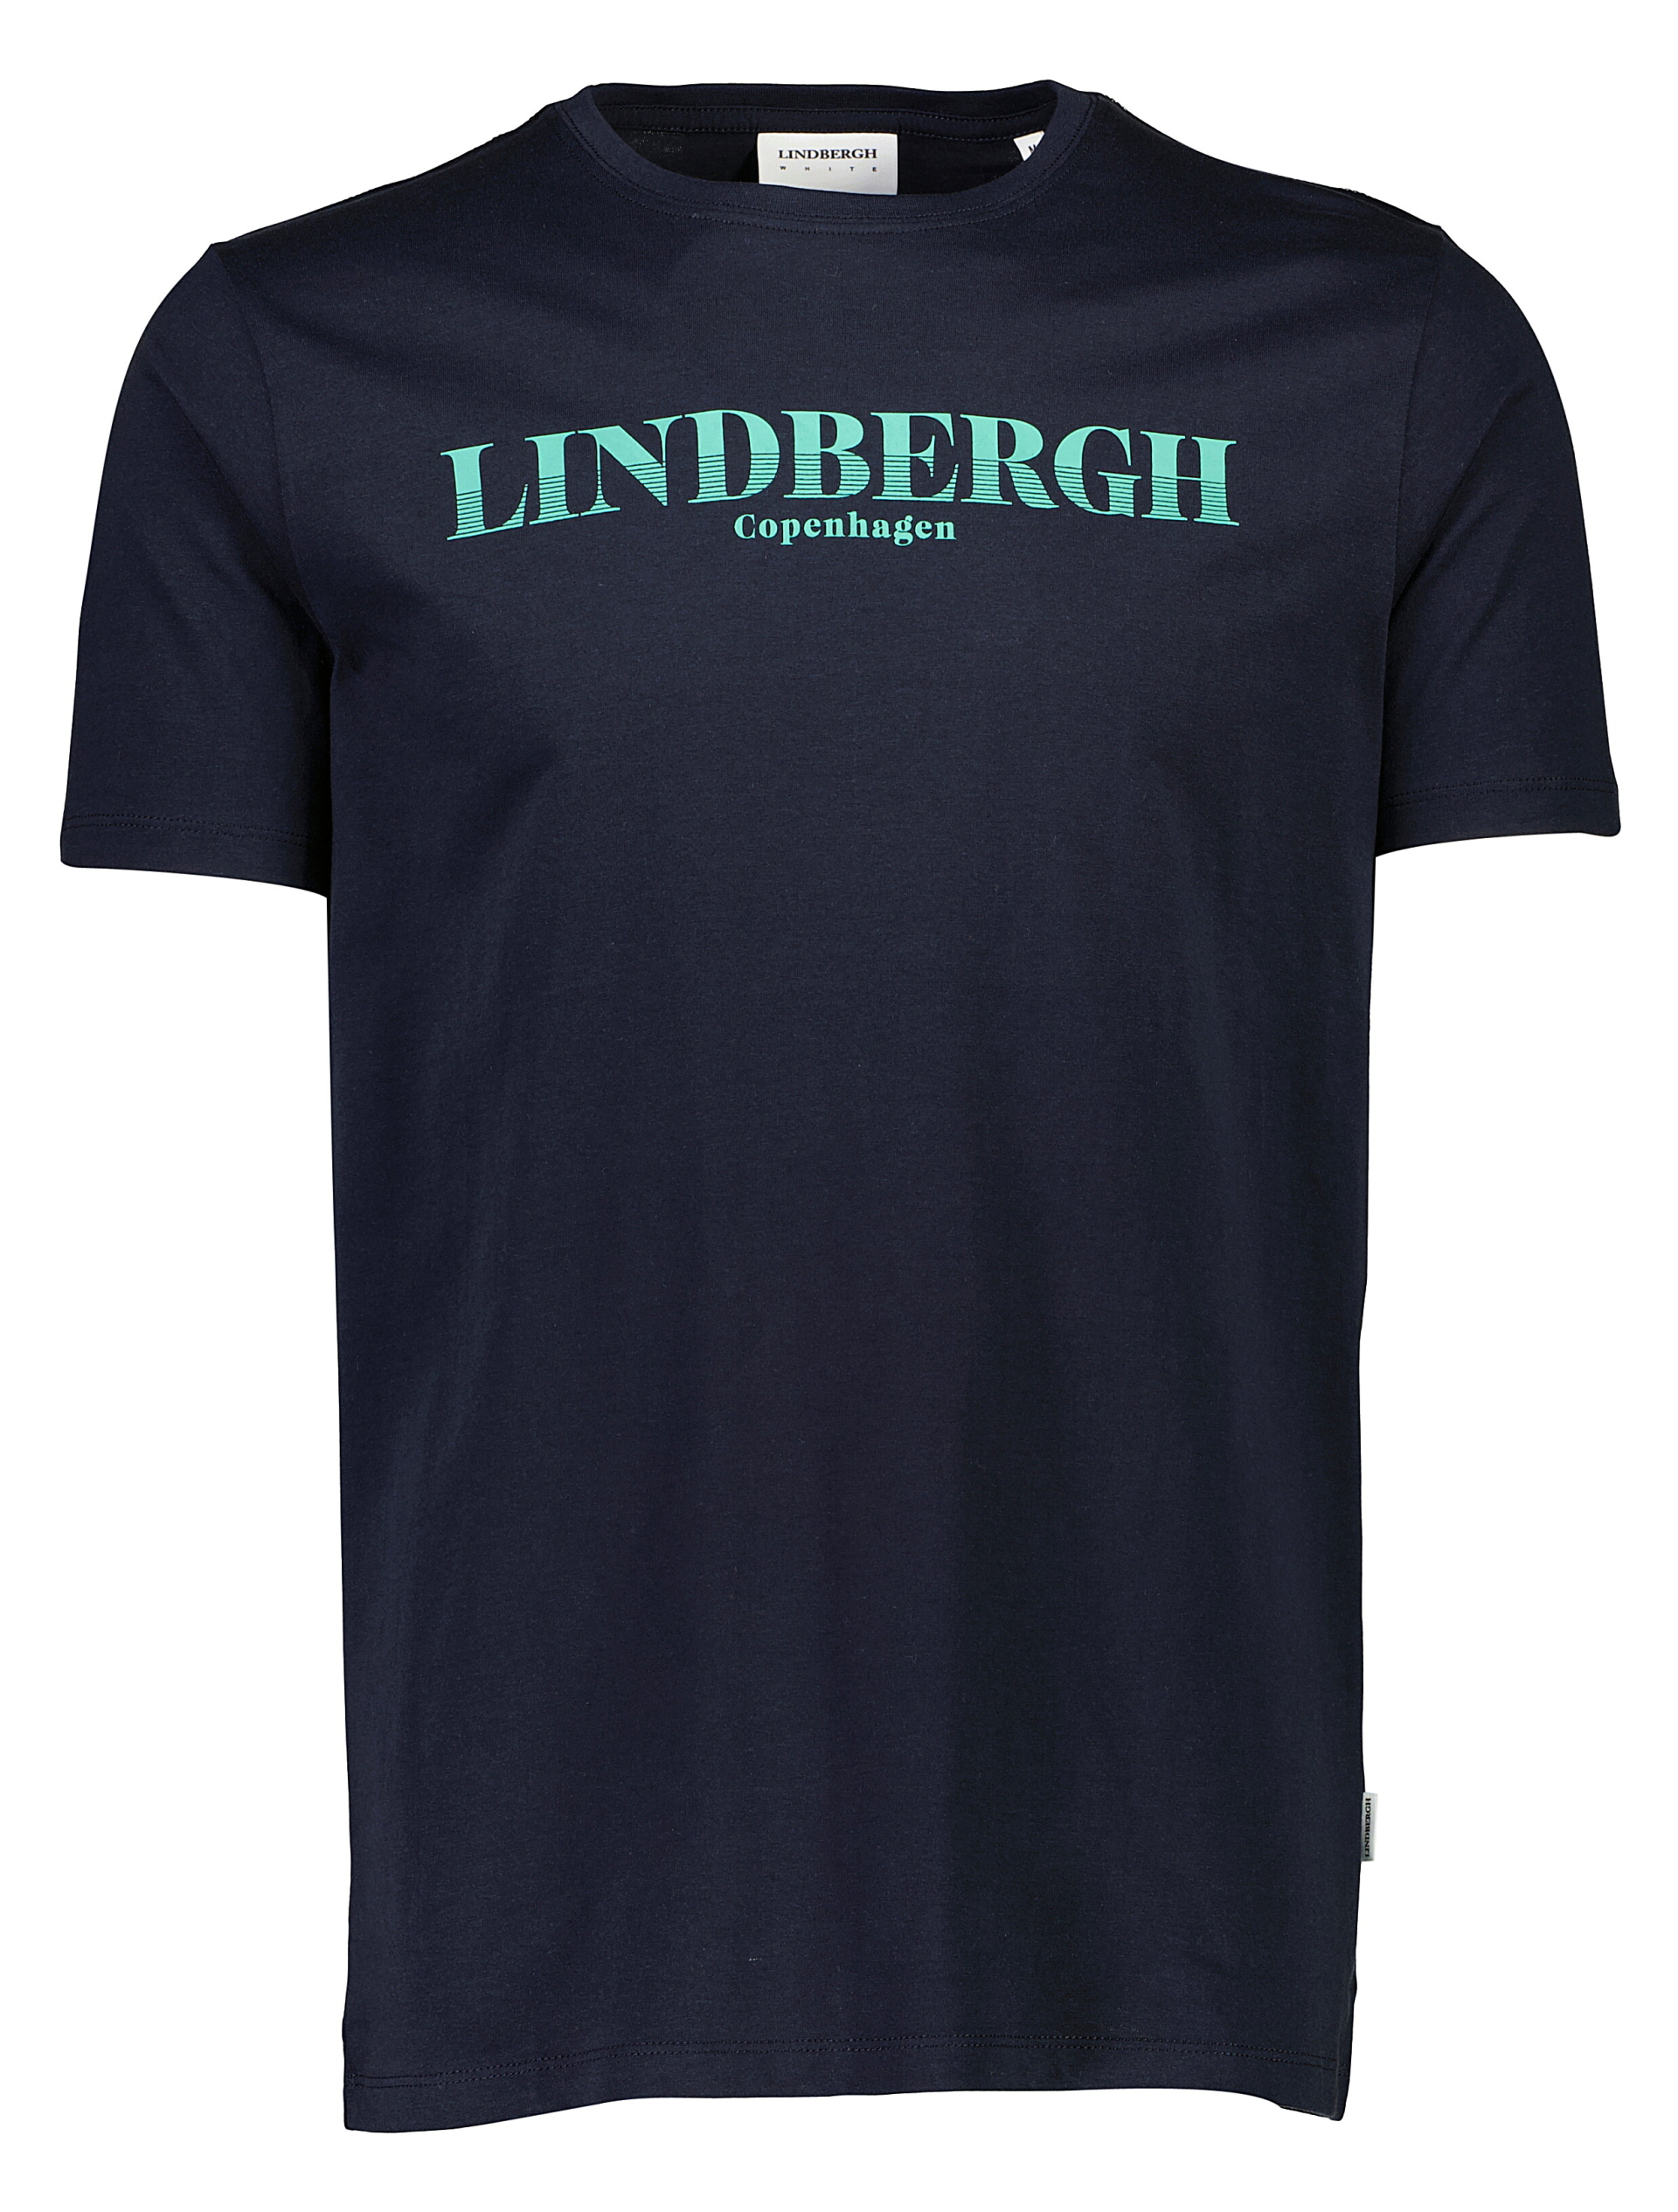 Lindbergh Tee blue / navy